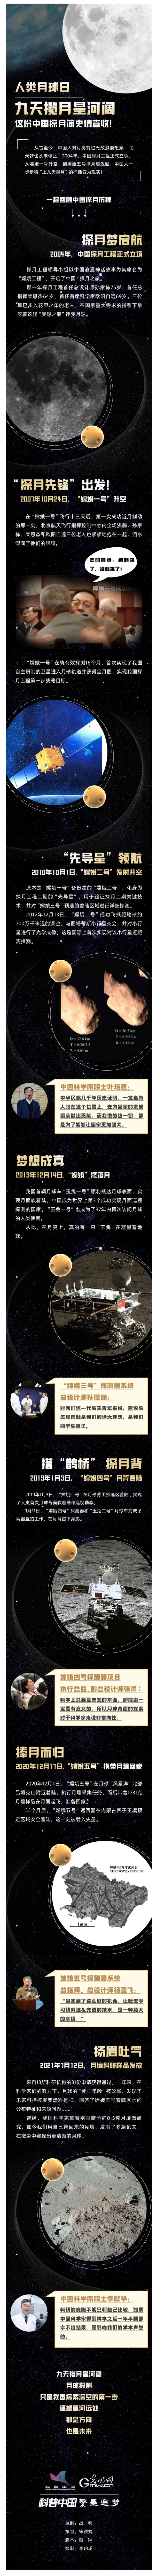 航天-_-中国探月简史，你了解多少？.jpg